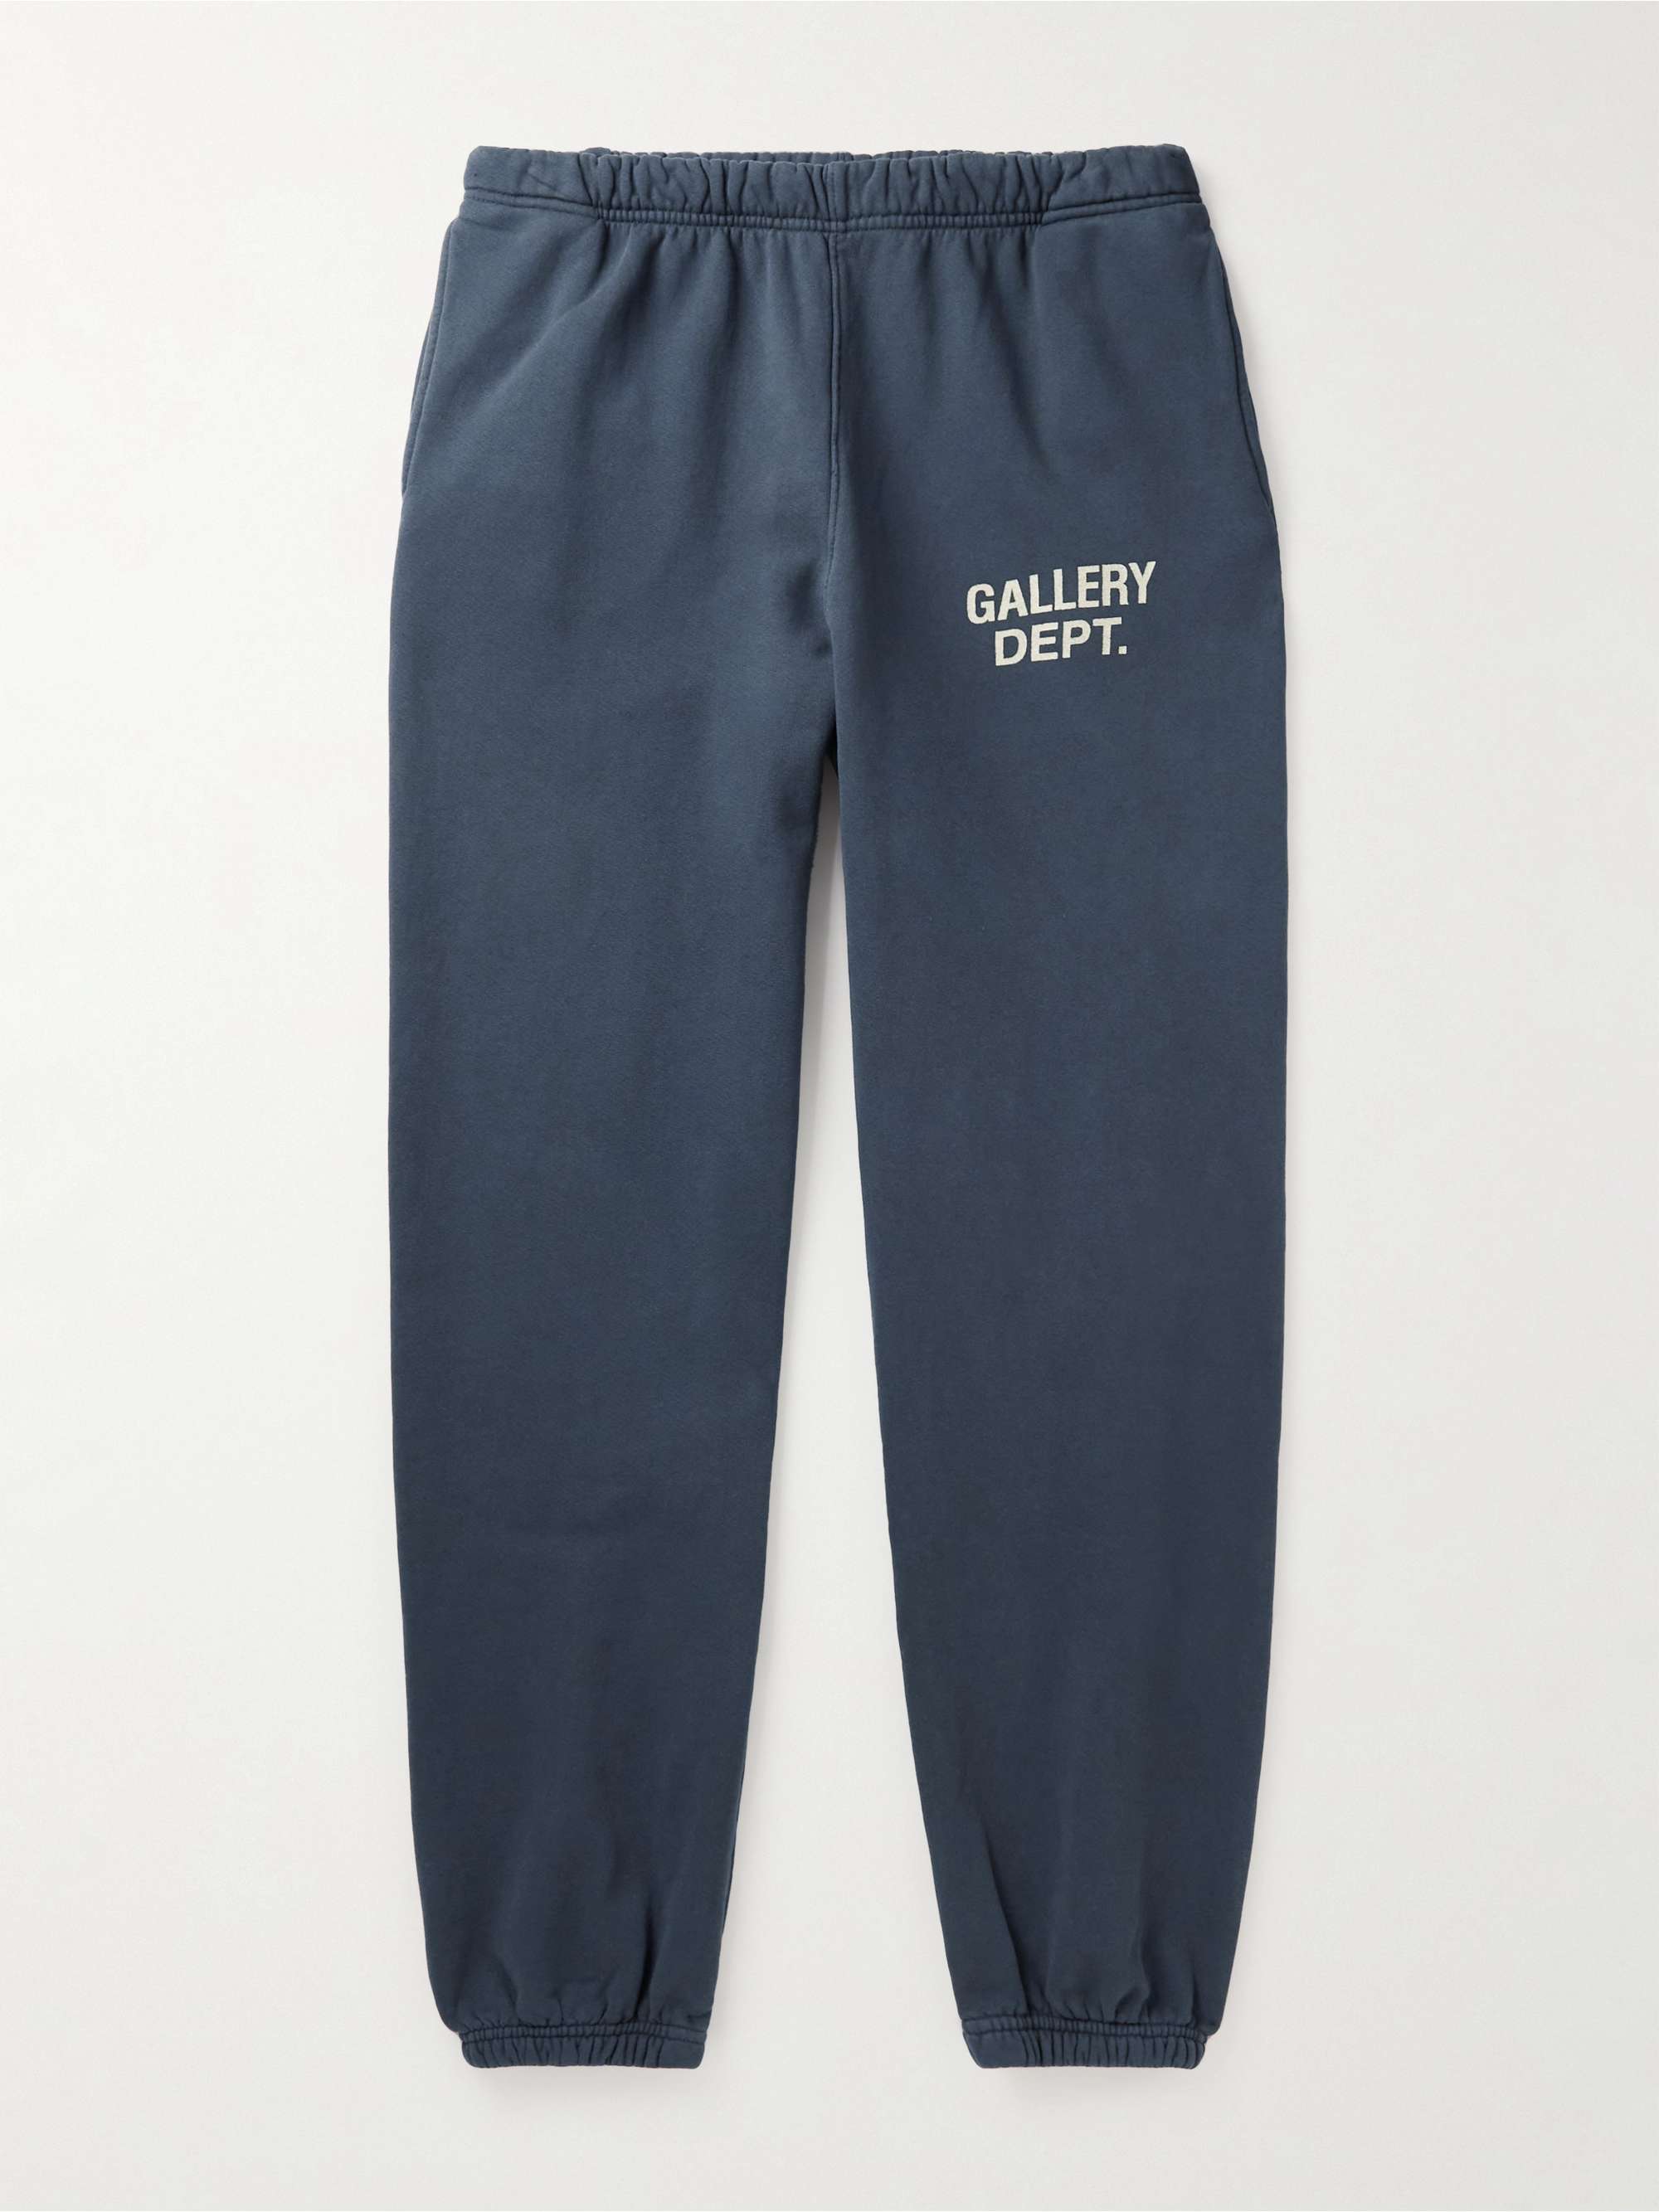 GALLERY DEPT. Tapered Logo-Print Cotton-Jersey Swetpants for Men | MR PORTER